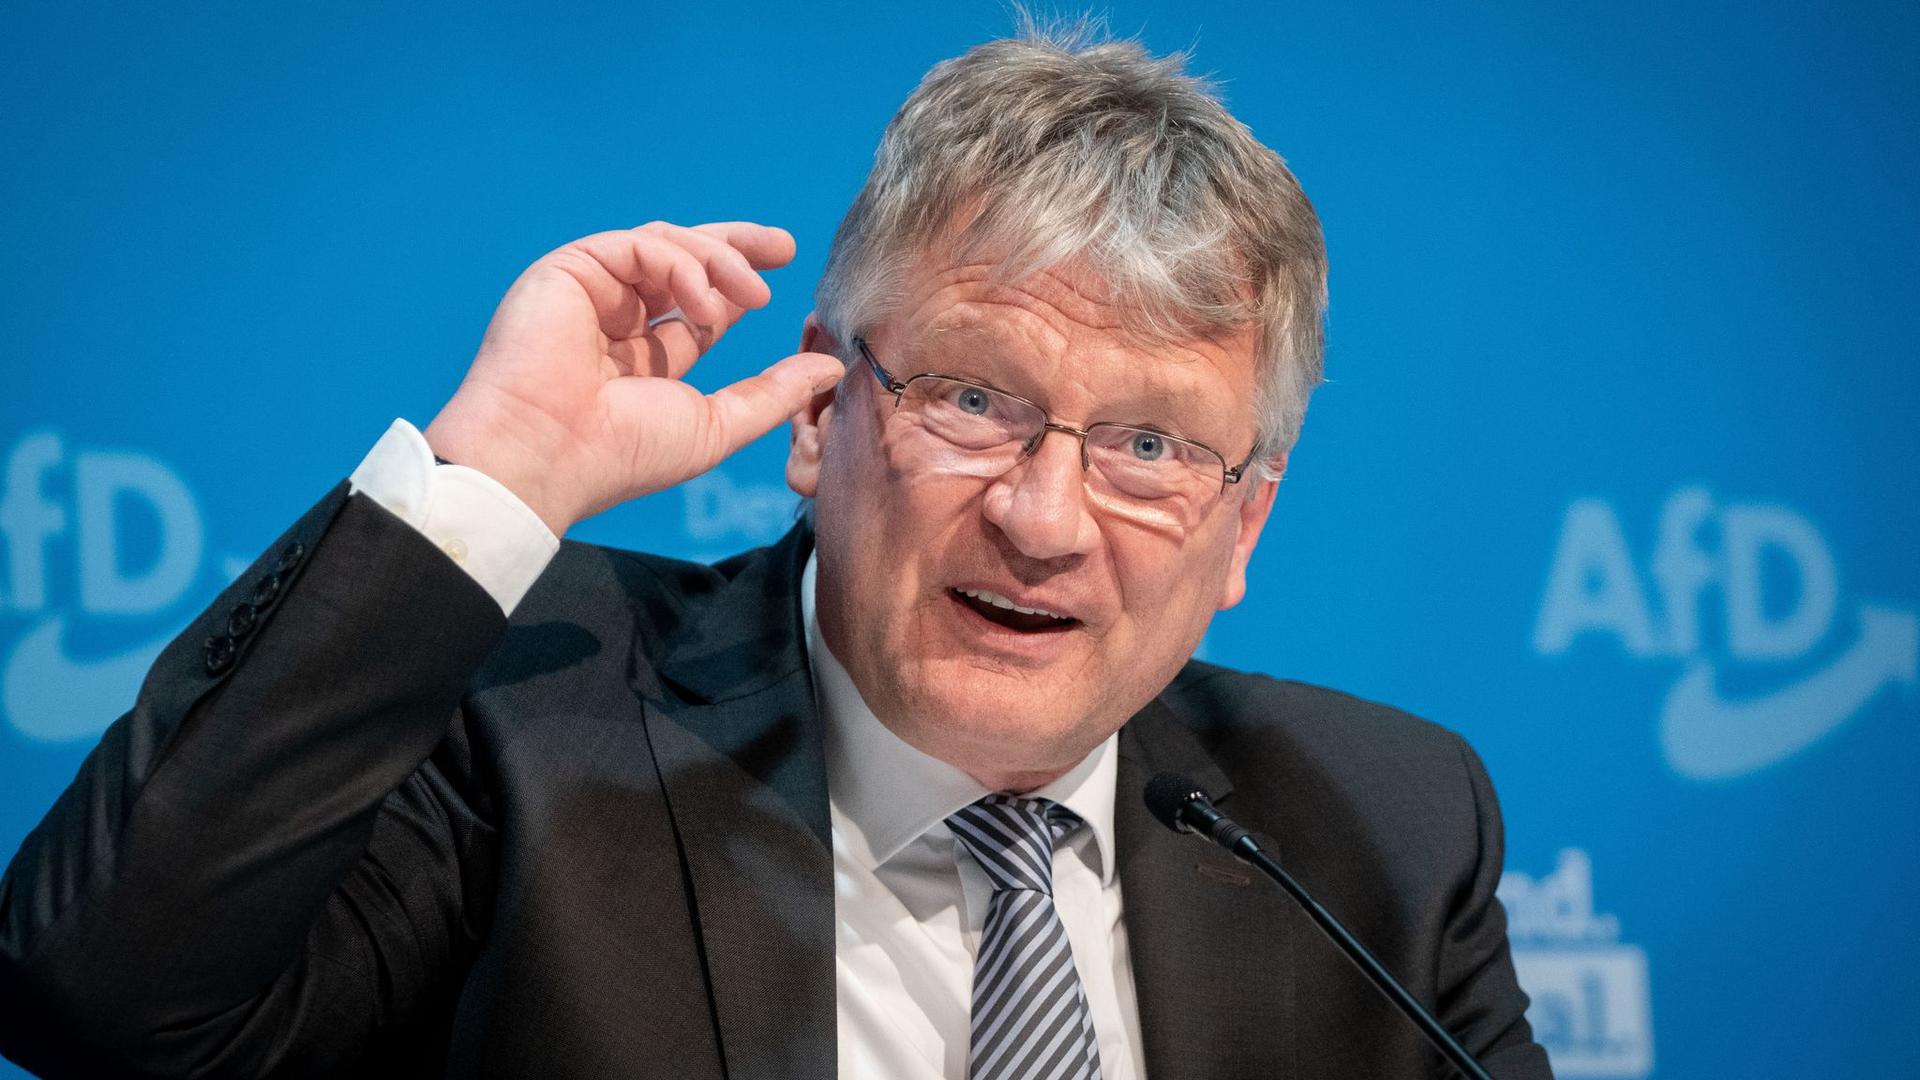 Der langjährige AfD-Vorsitzende Jörg Meuthen verlässt die Partei.